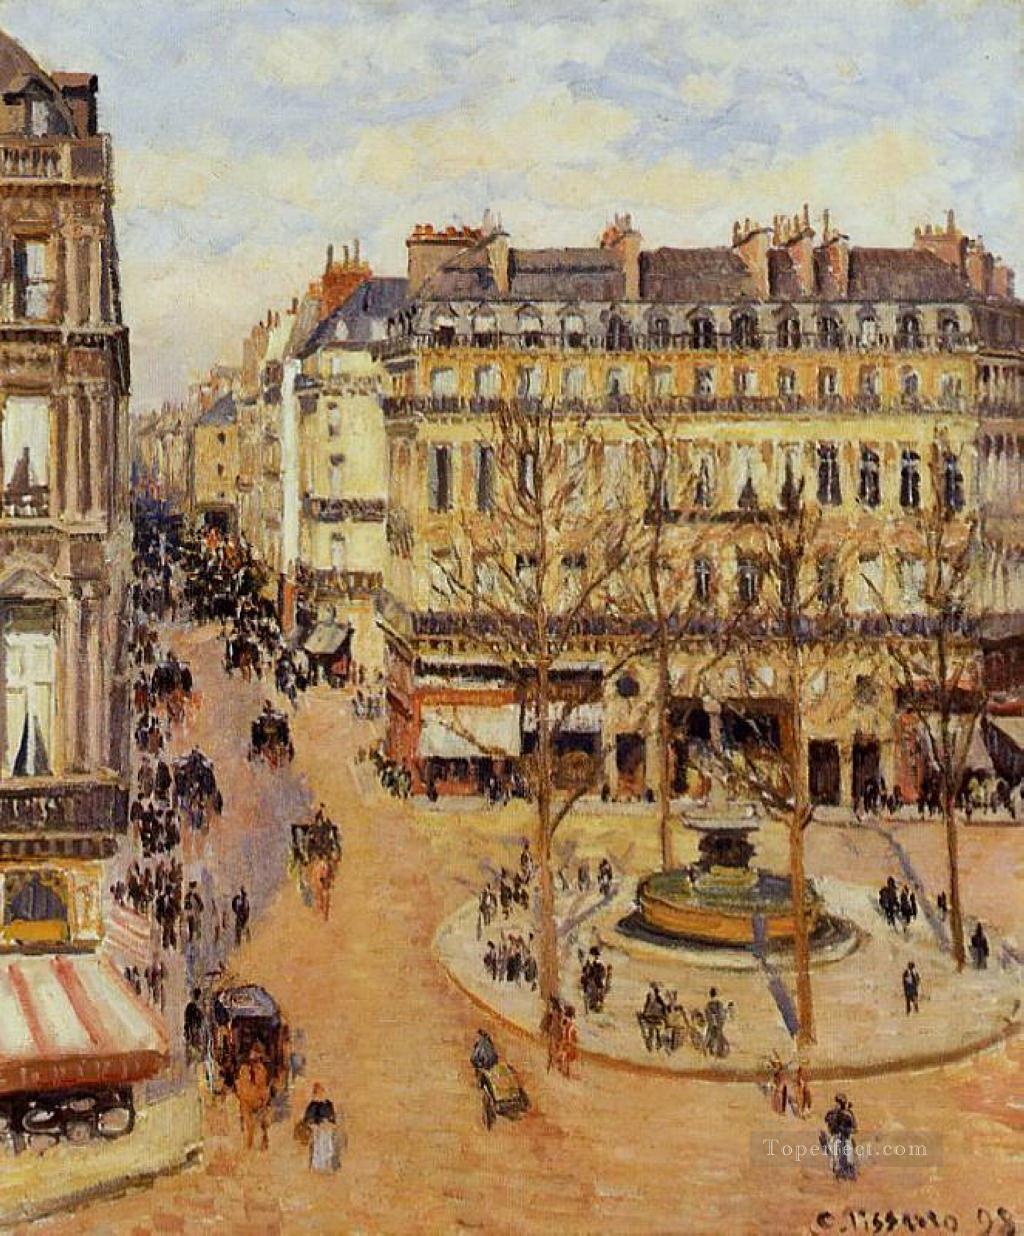 サントノーレ通り 朝の太陽の効果 フランセ劇場広場 1898年 カミーユ・ピサロ油絵